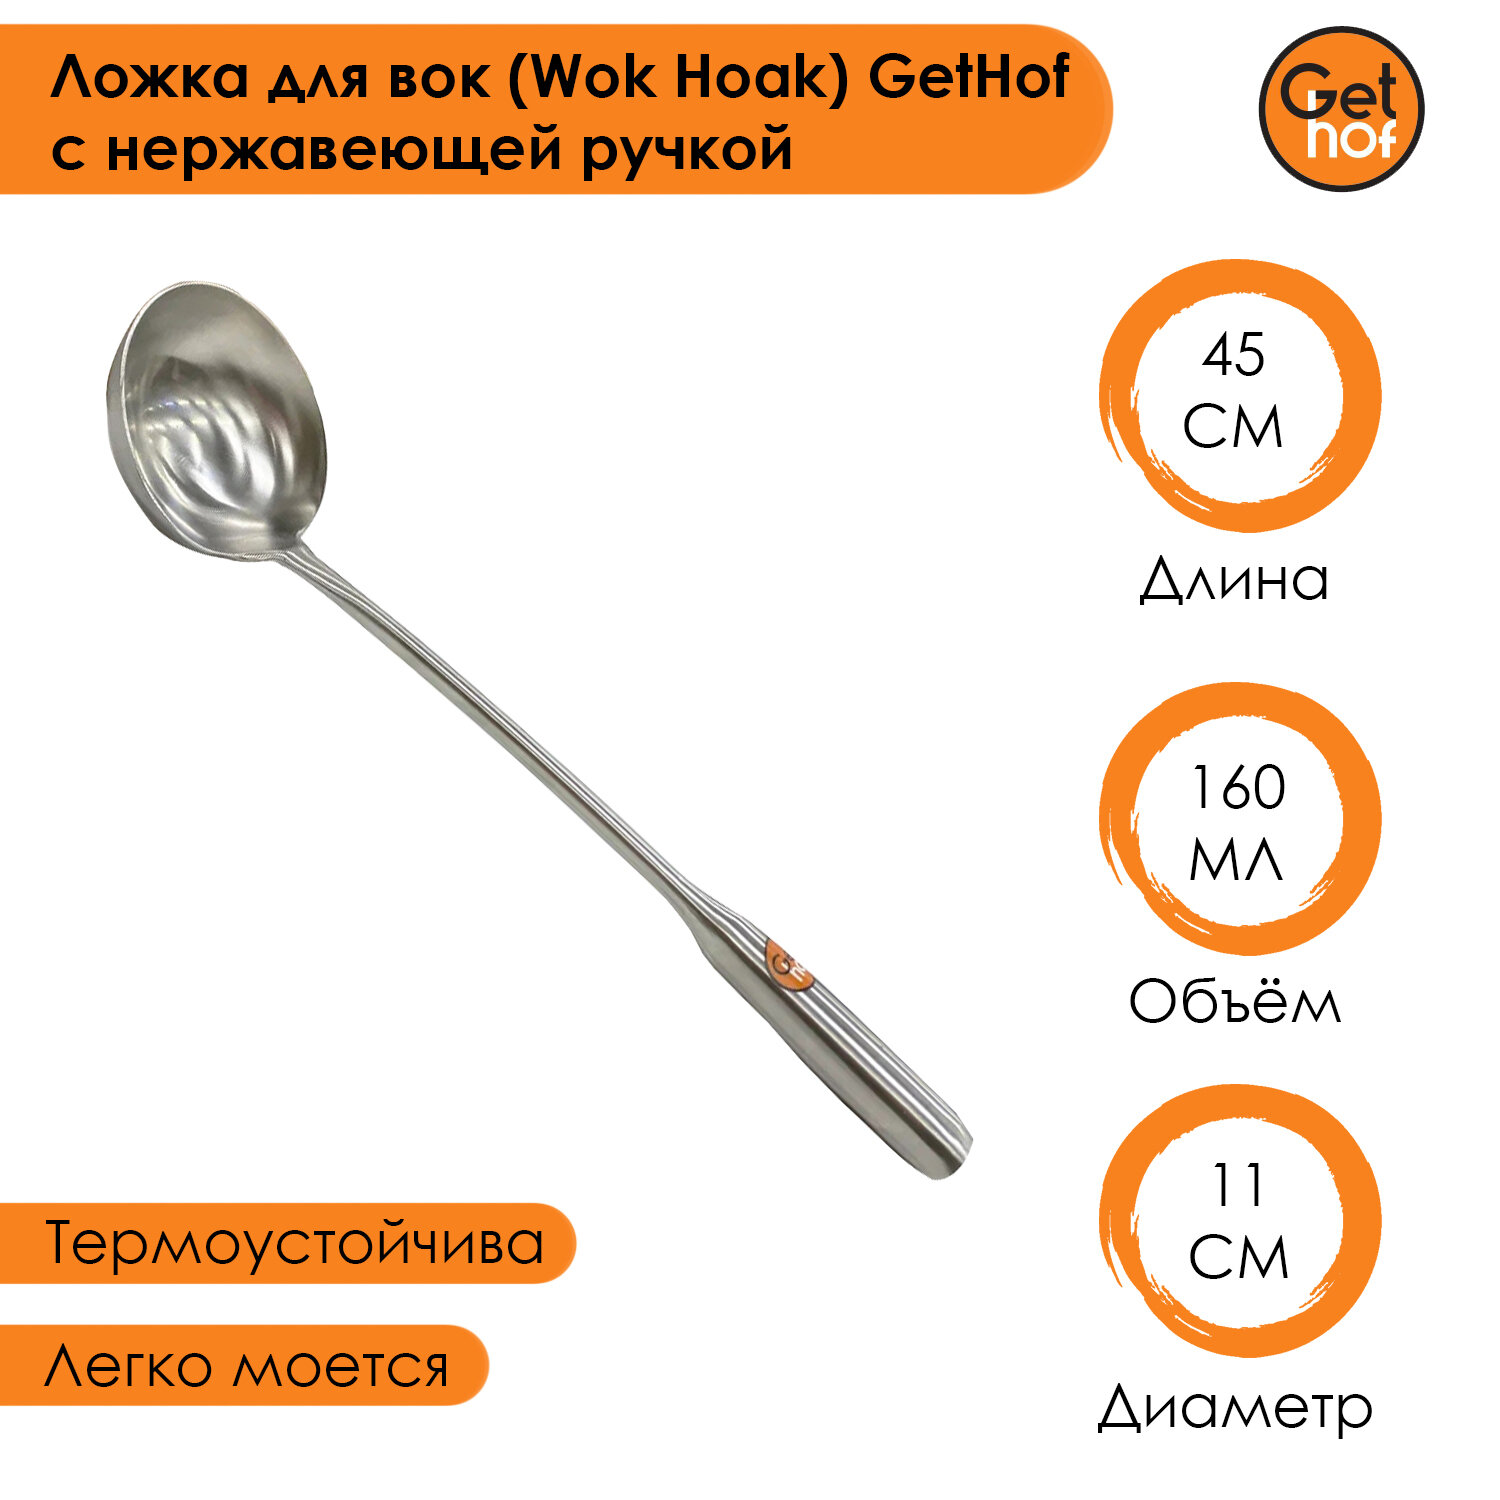 Ложка кулинарная для вок (Wok) GetHof Premium S304 нержавеющая ручка 160 мл